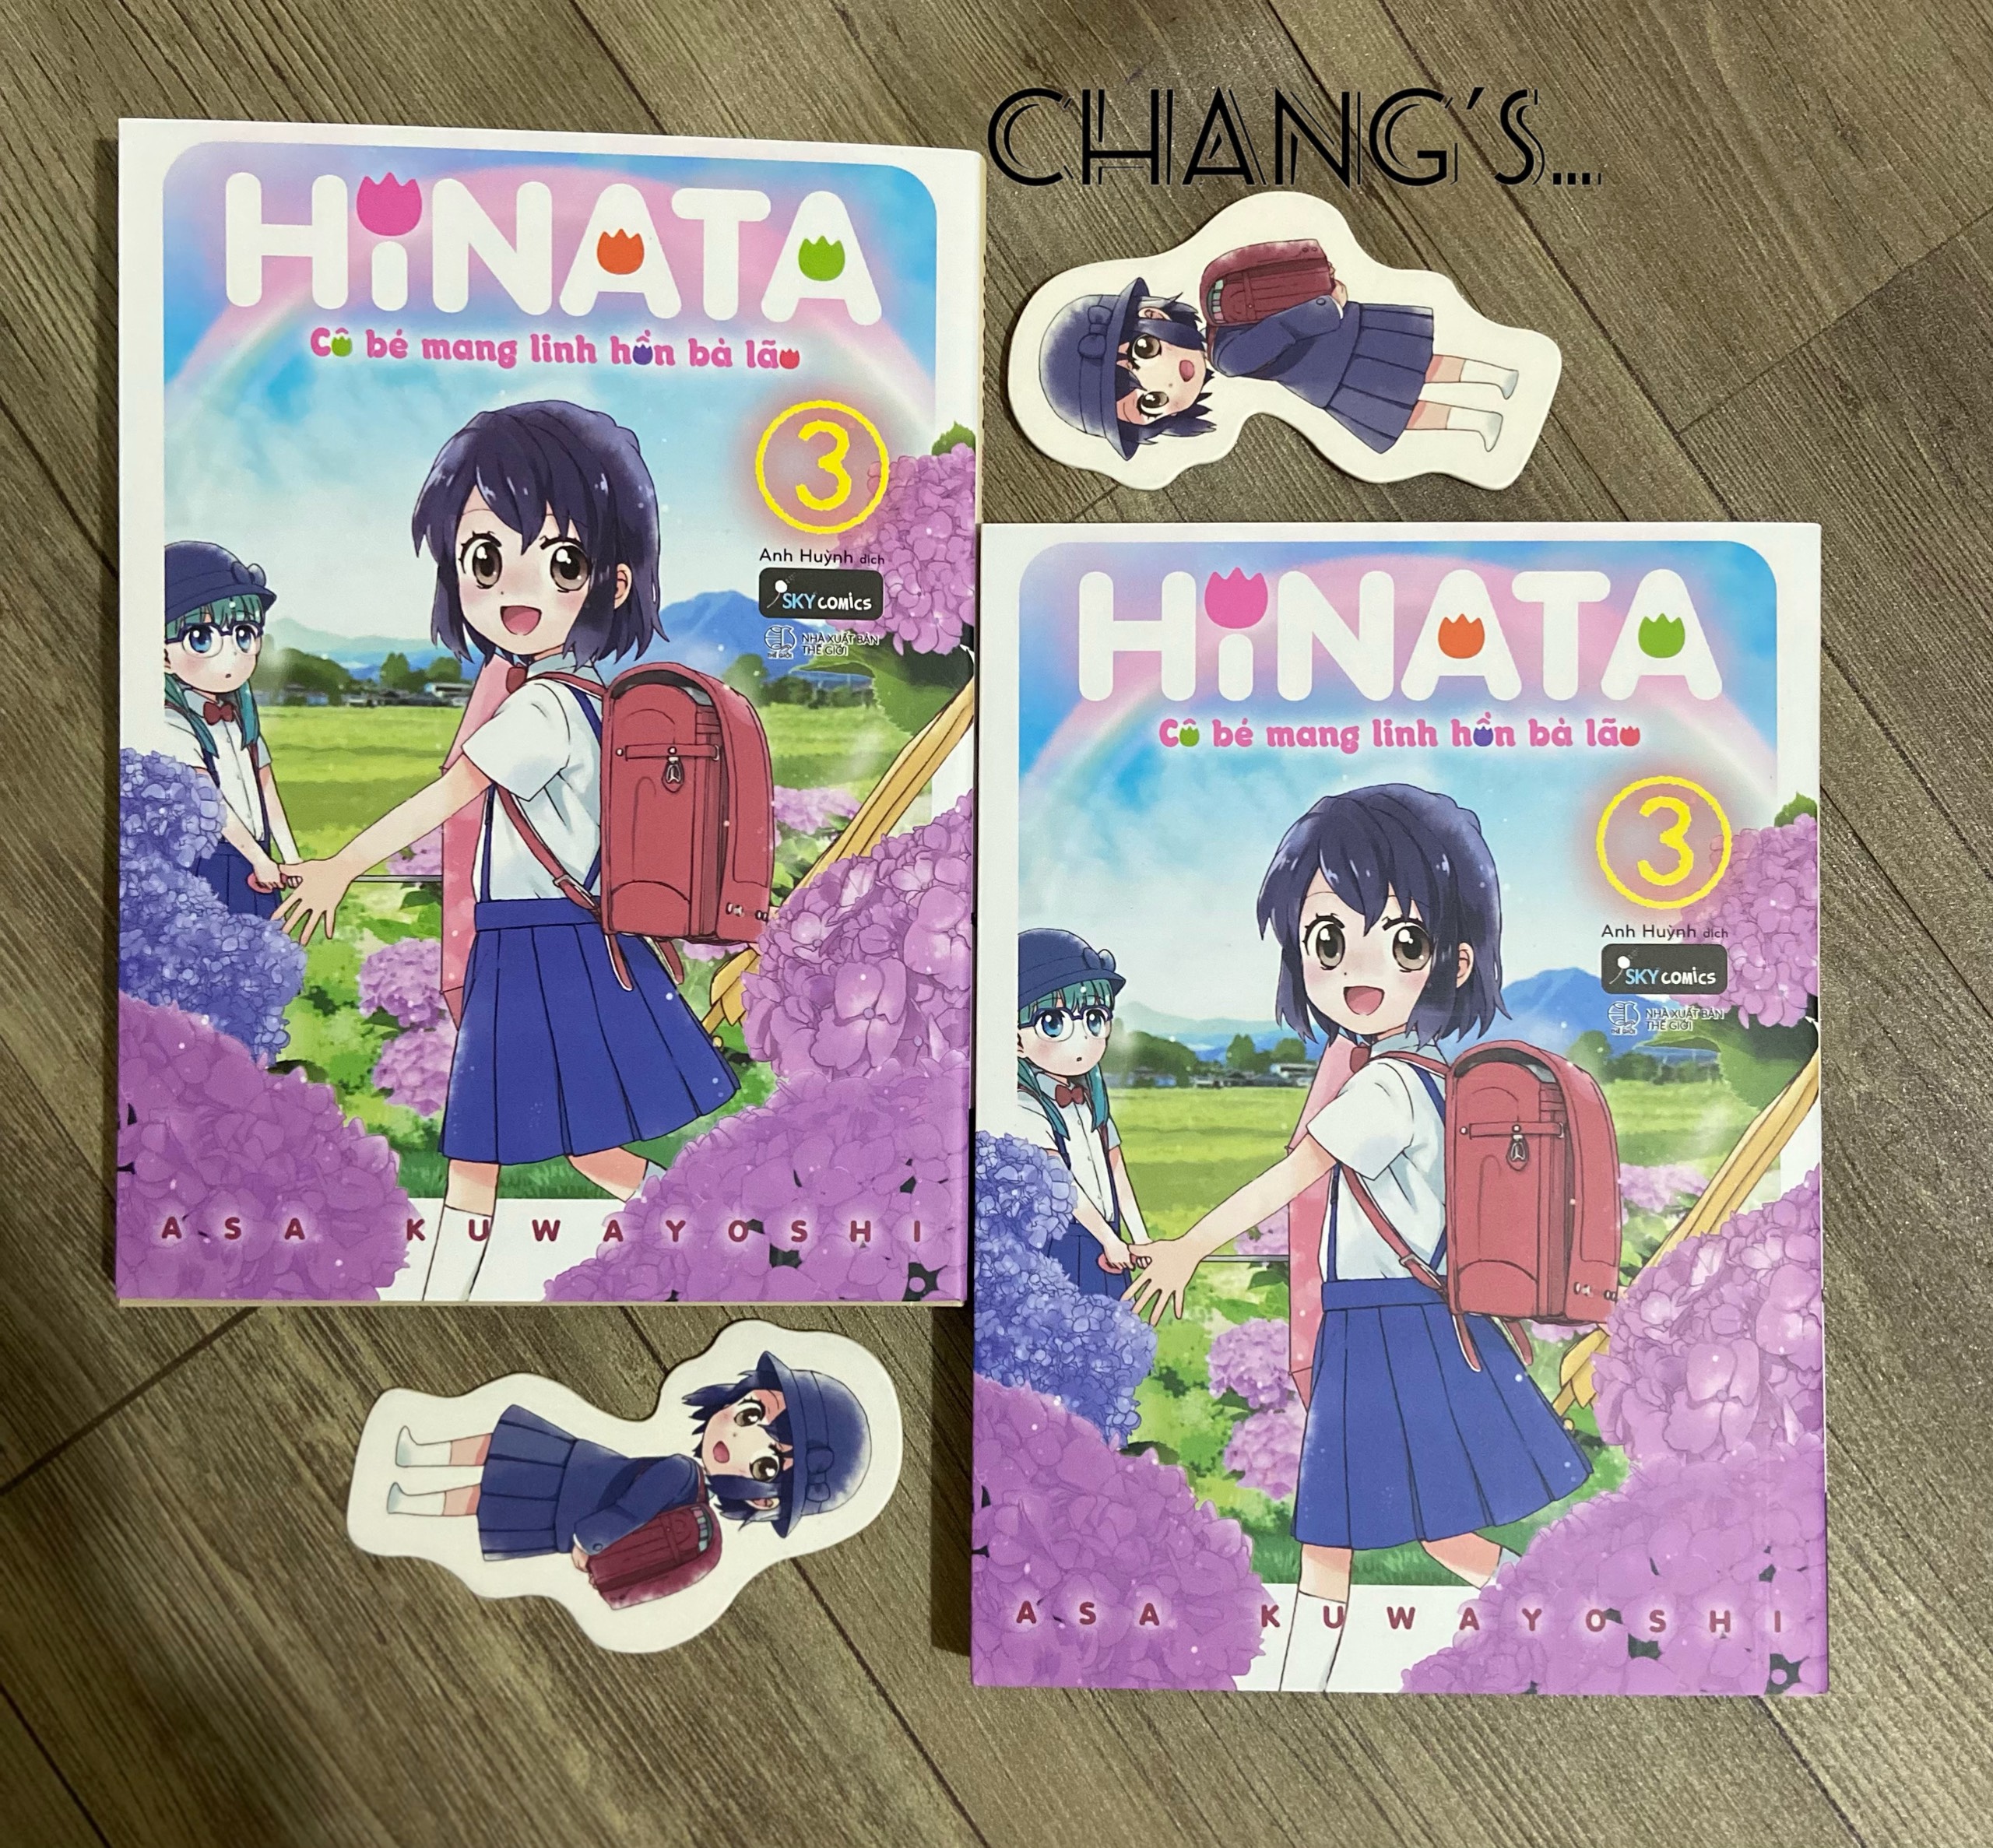 Hinata - Cô bé mang linh hồn bà lão Tập 1 2 3 kèm Bookmark